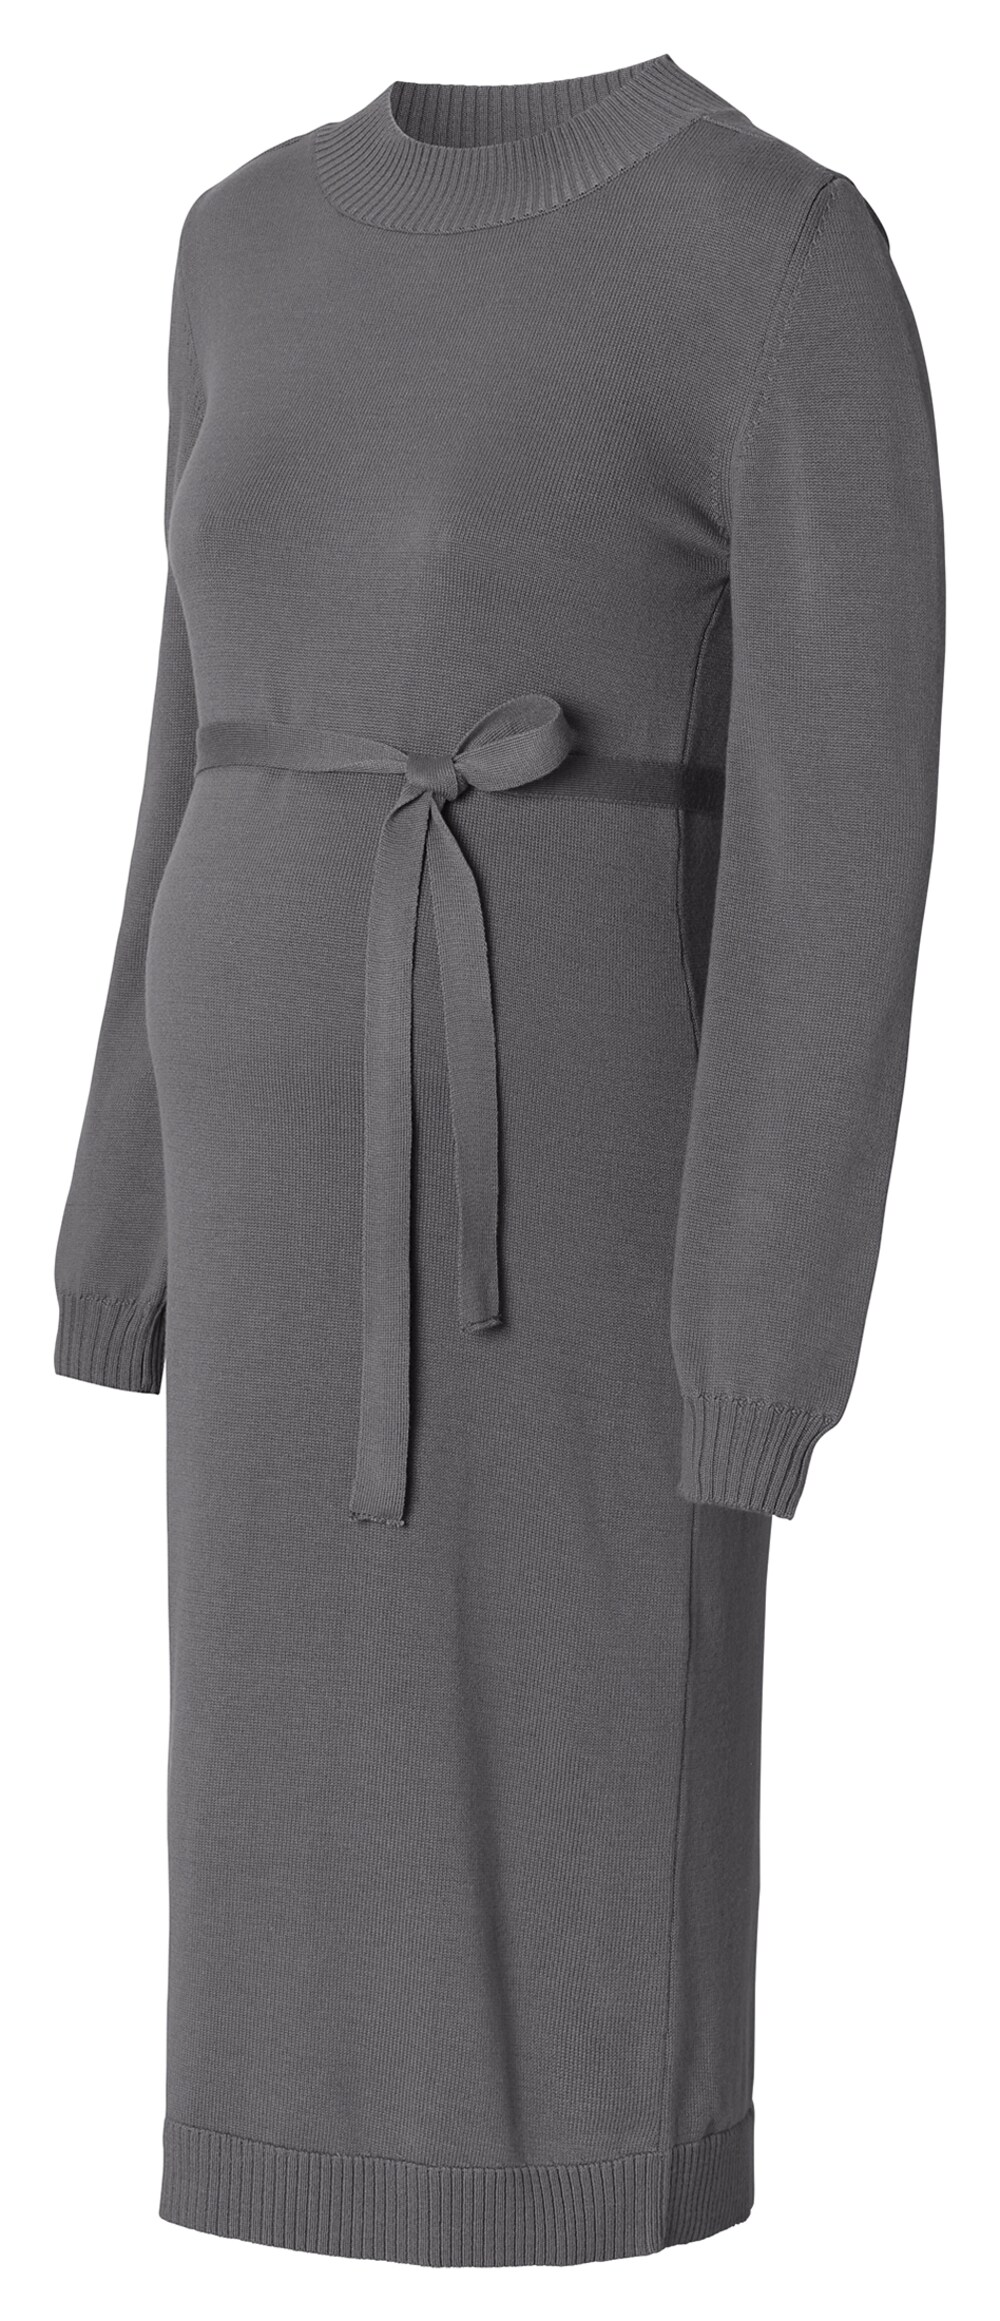 Вязанное платье Esprit, базальтовый серый вязанное платье esprit светло серый